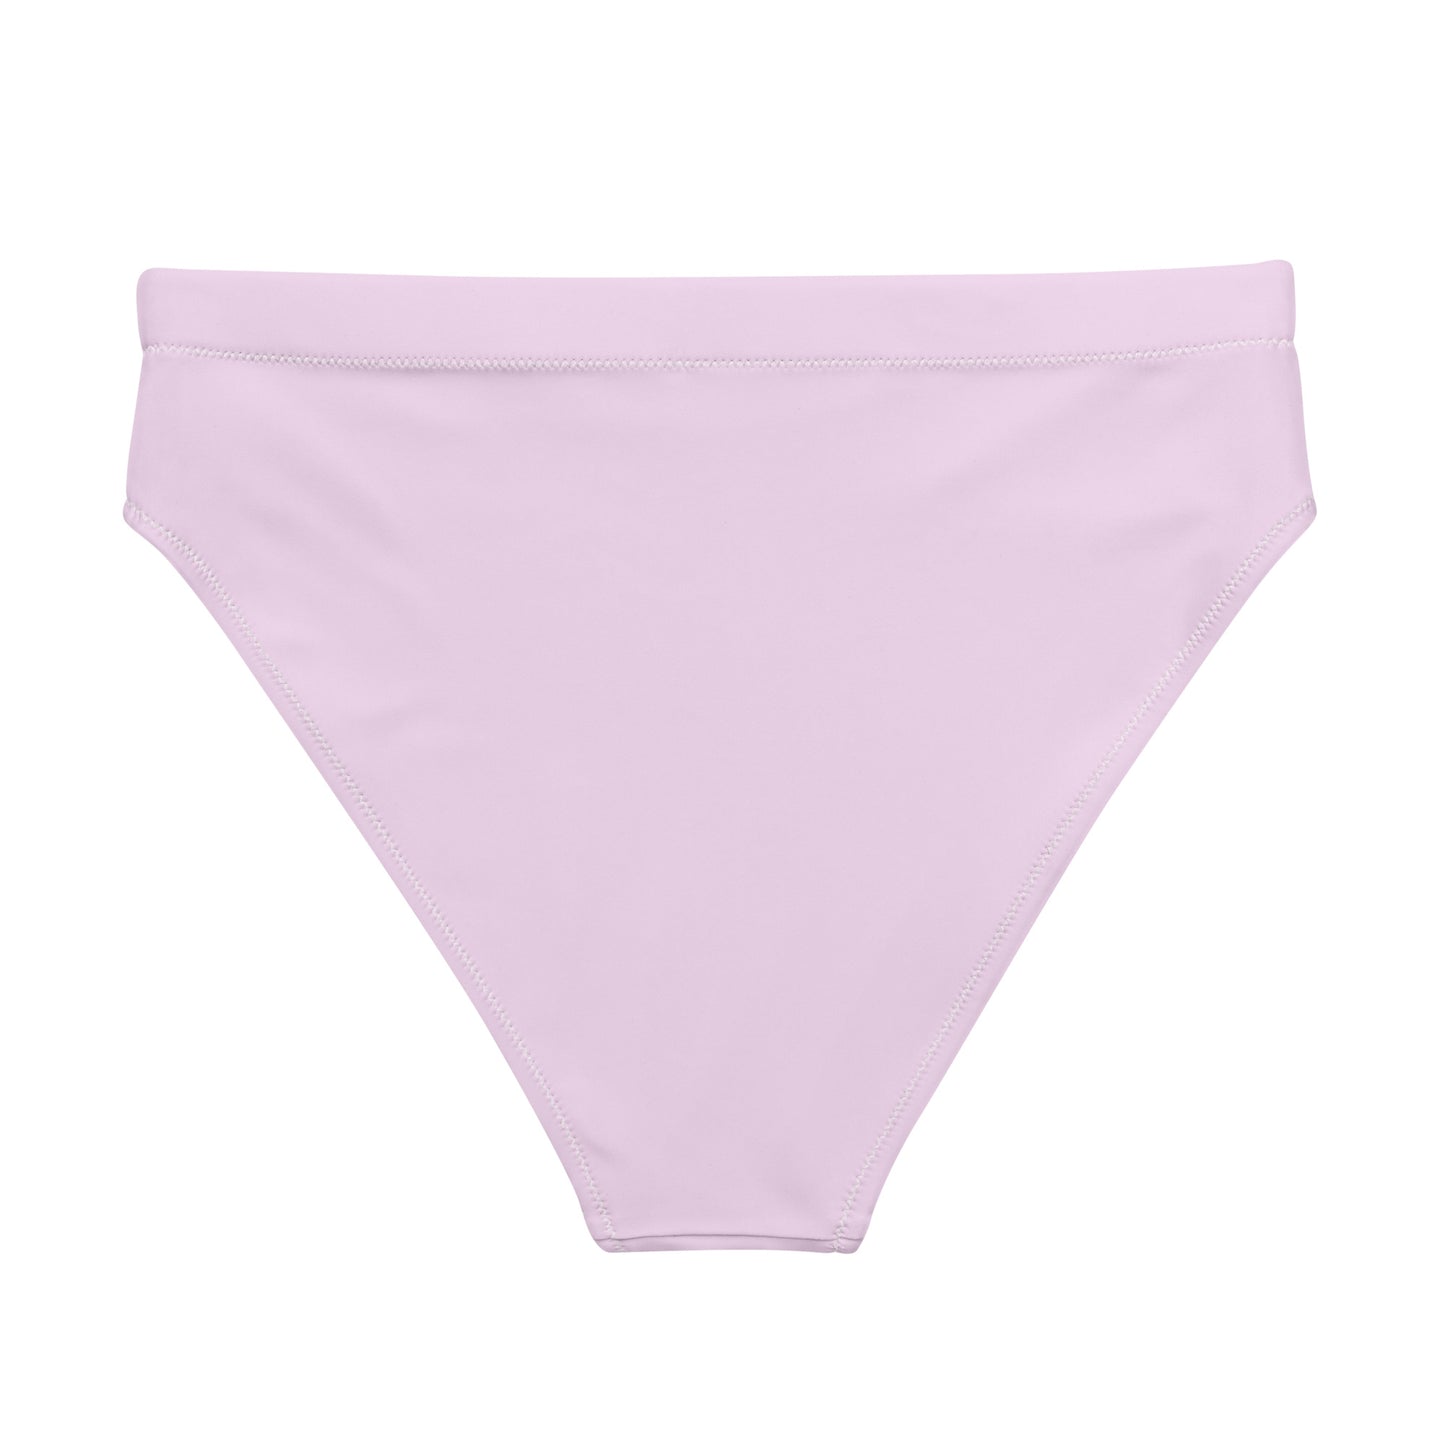 DH Bikini Bottom in Light Pink